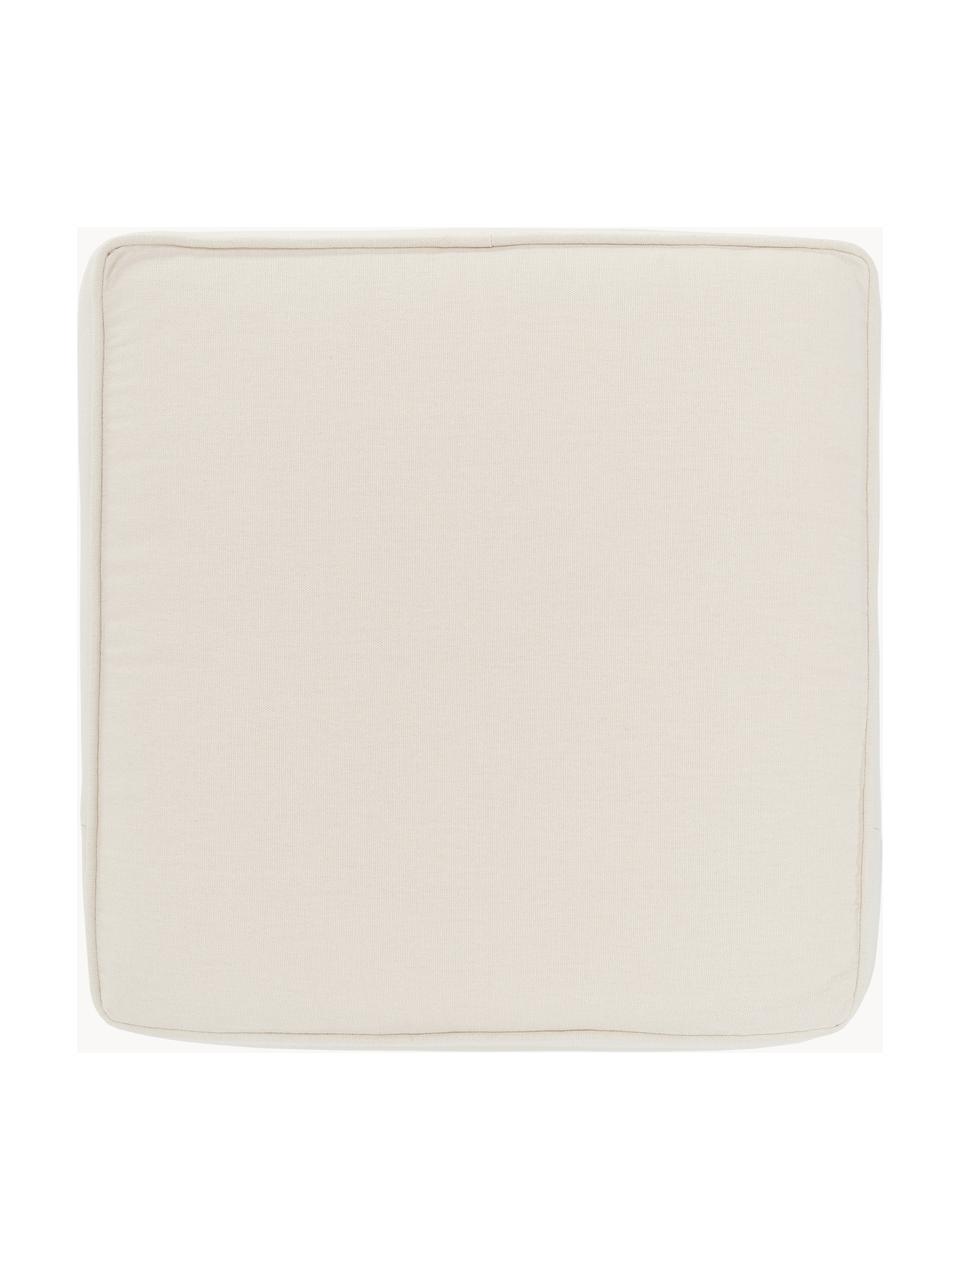 Hohes Sitzkissen Zoey, 2 Stück, Bezug: 100 % Baumwolle, Off White, B 40 x L 40 cm